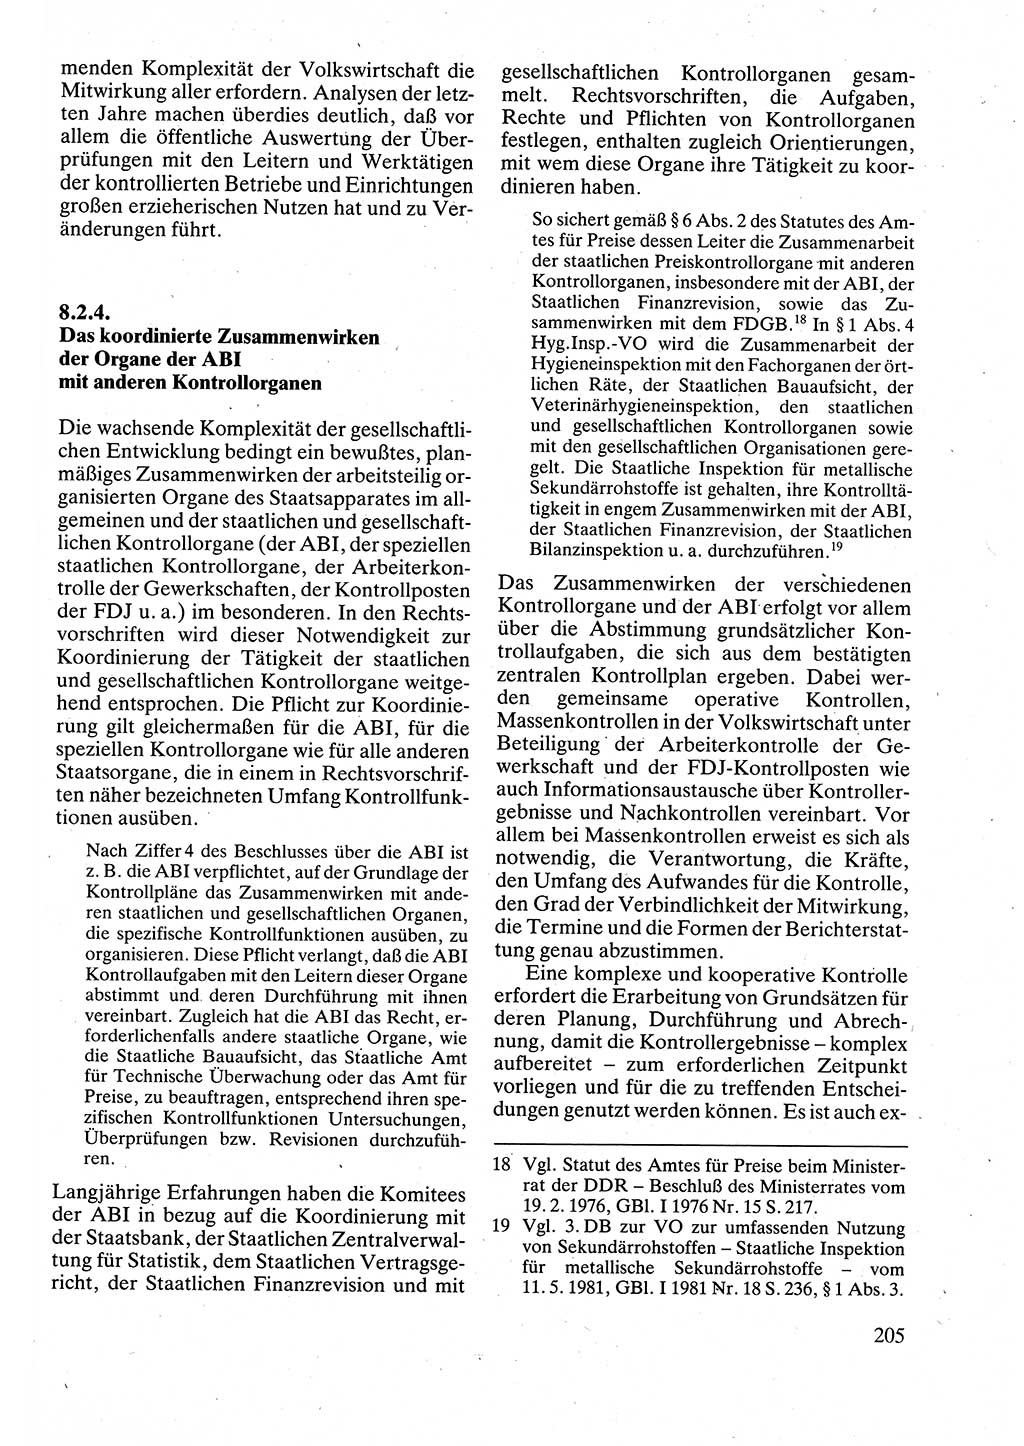 Verwaltungsrecht [Deutsche Demokratische Republik (DDR)], Lehrbuch 1988, Seite 205 (Verw.-R. DDR Lb. 1988, S. 205)